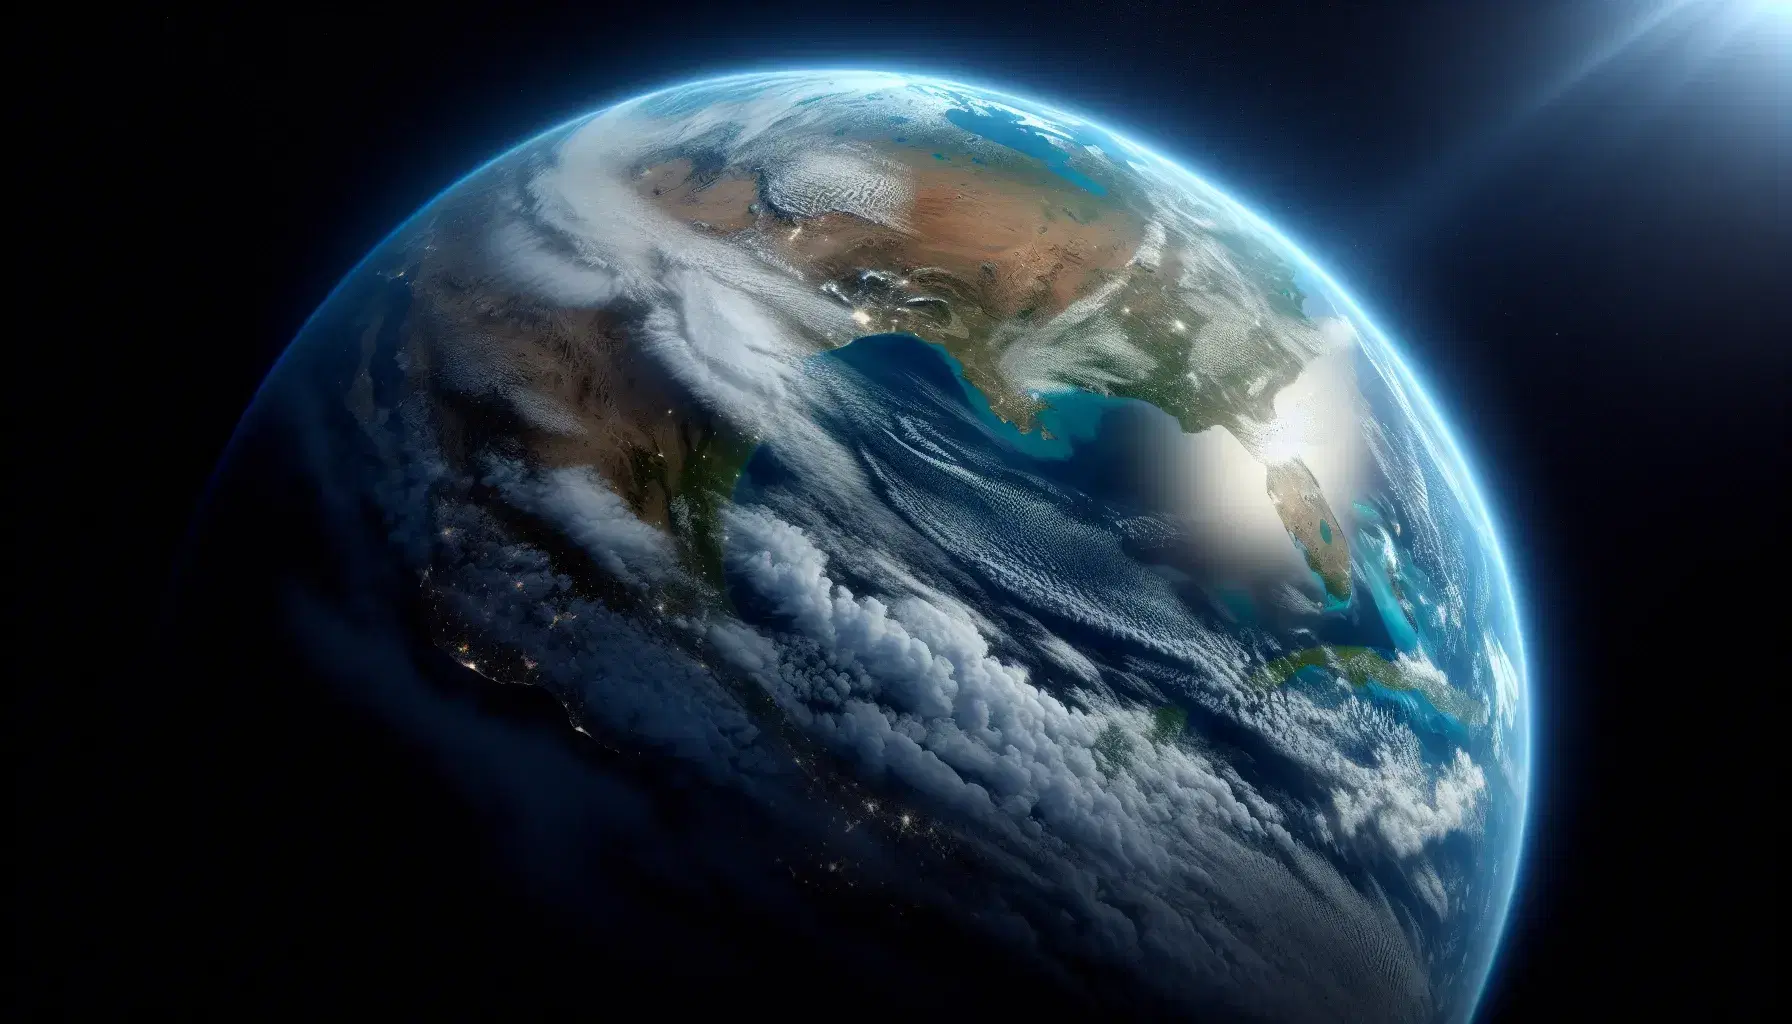 Vista della Terra dallo spazio con atmosfera blu, nuvole bianche, deserti marroni, foreste verdi e oceani blu, senza segni umani.